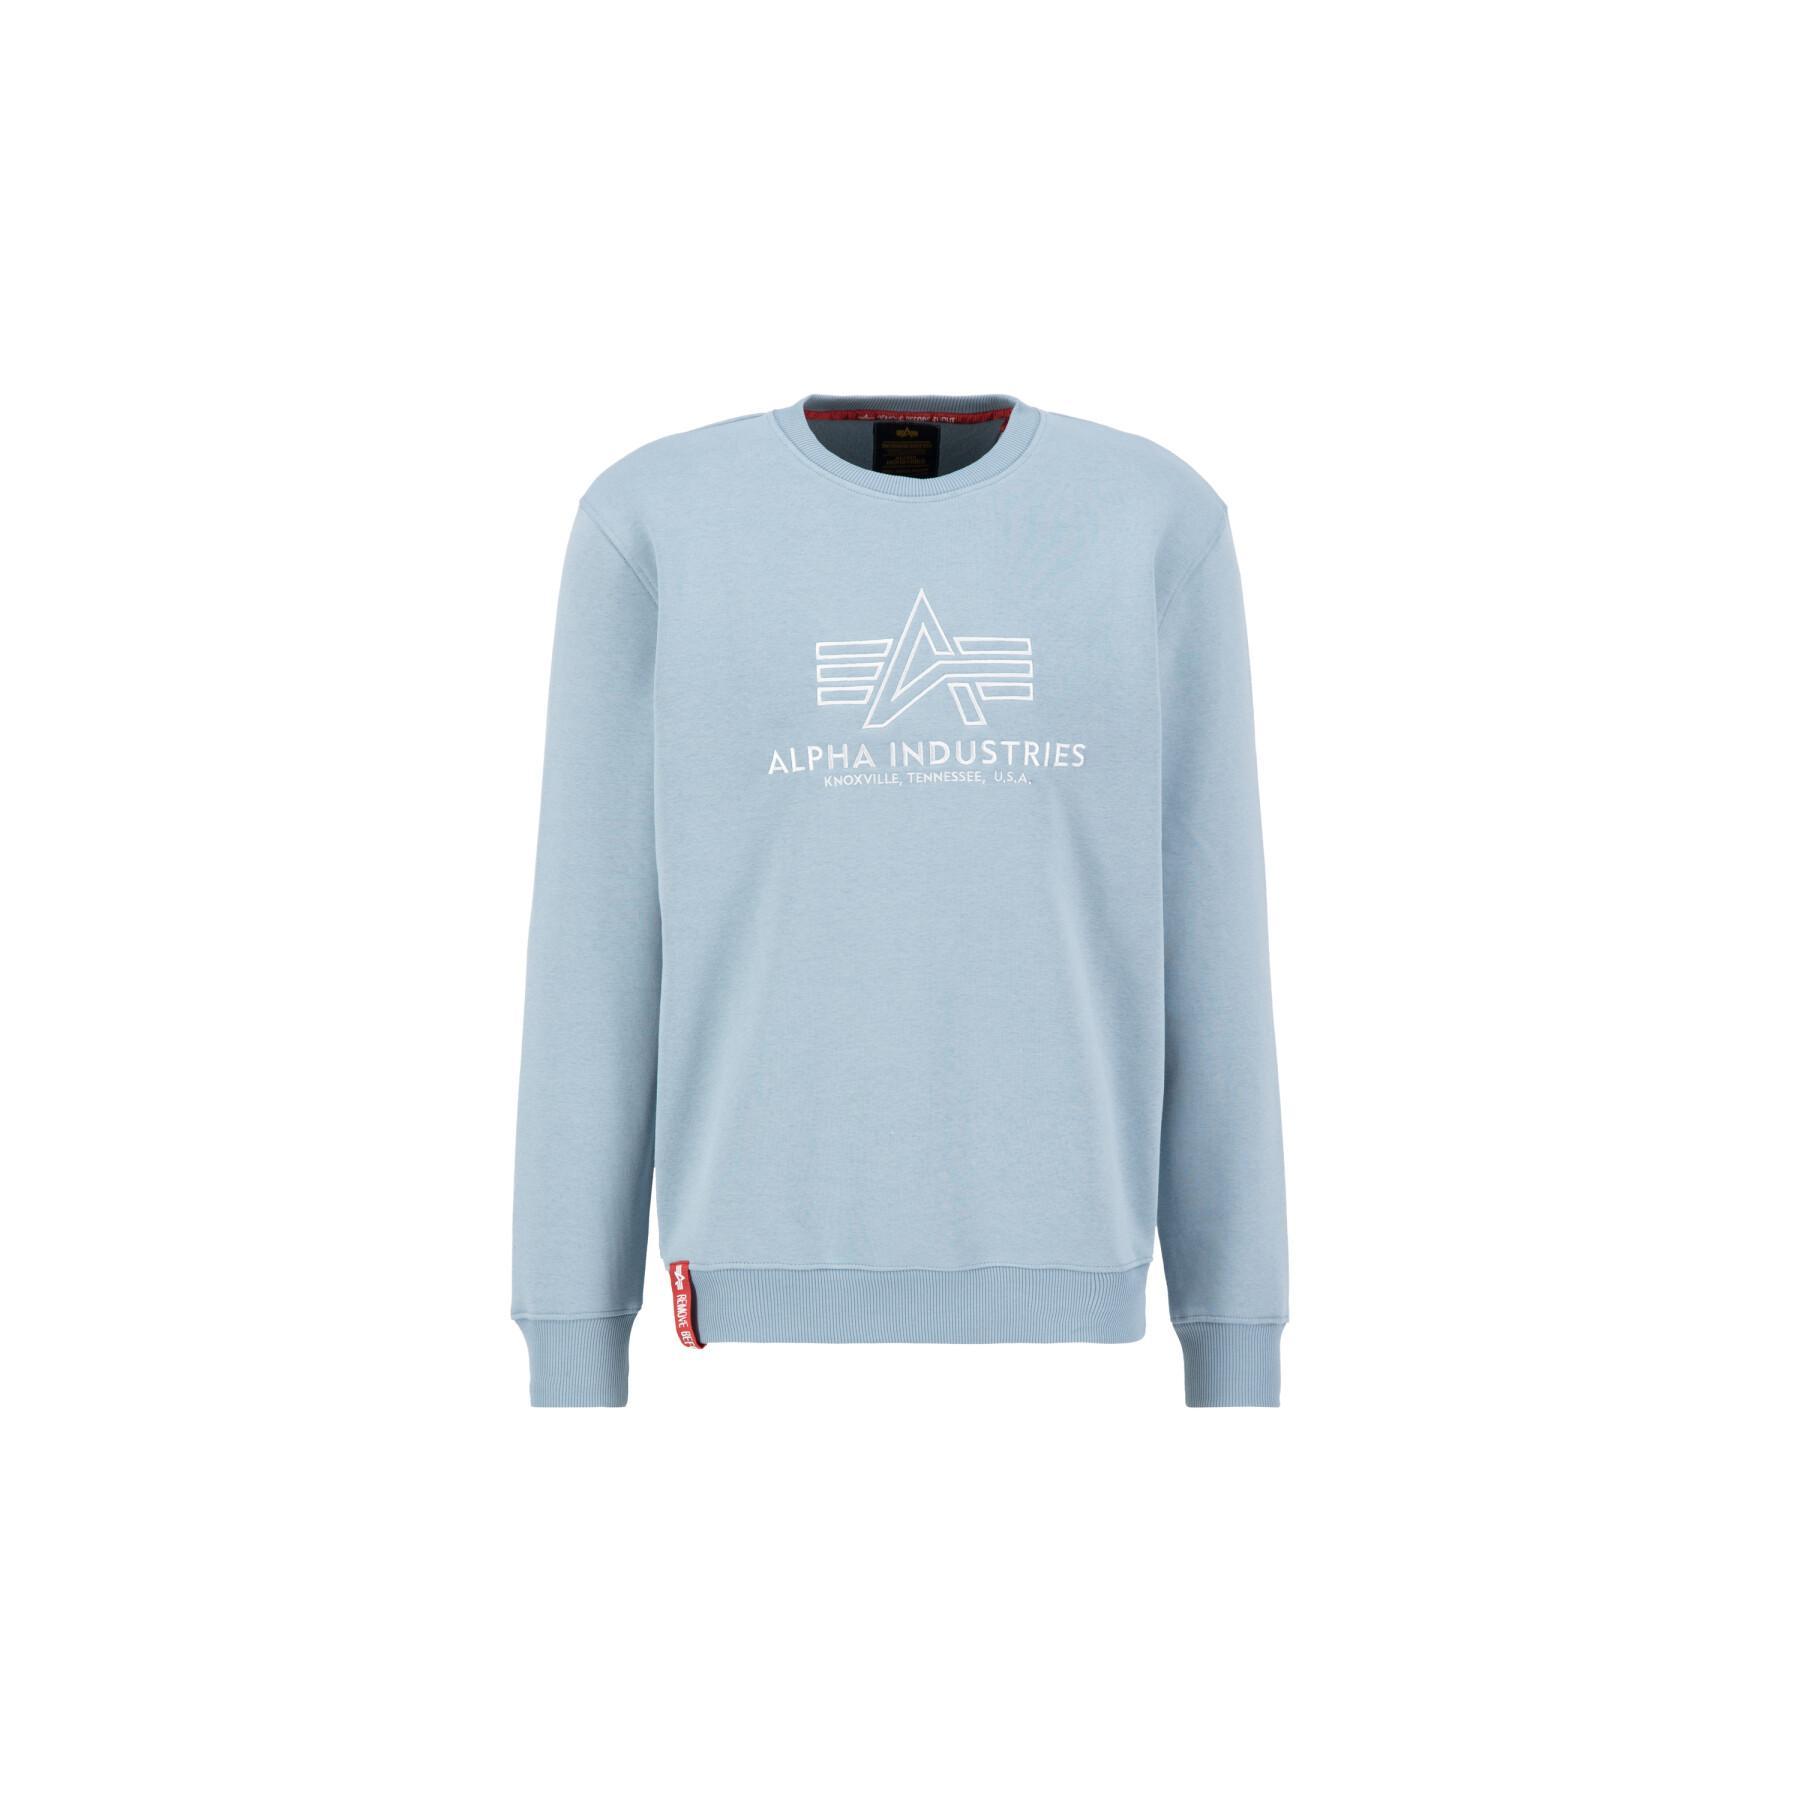 Basic - - Sweatshirt Sweats Lifestyle Hoodies Alpha Embroidery - & Industries Alpha Industries Sweats